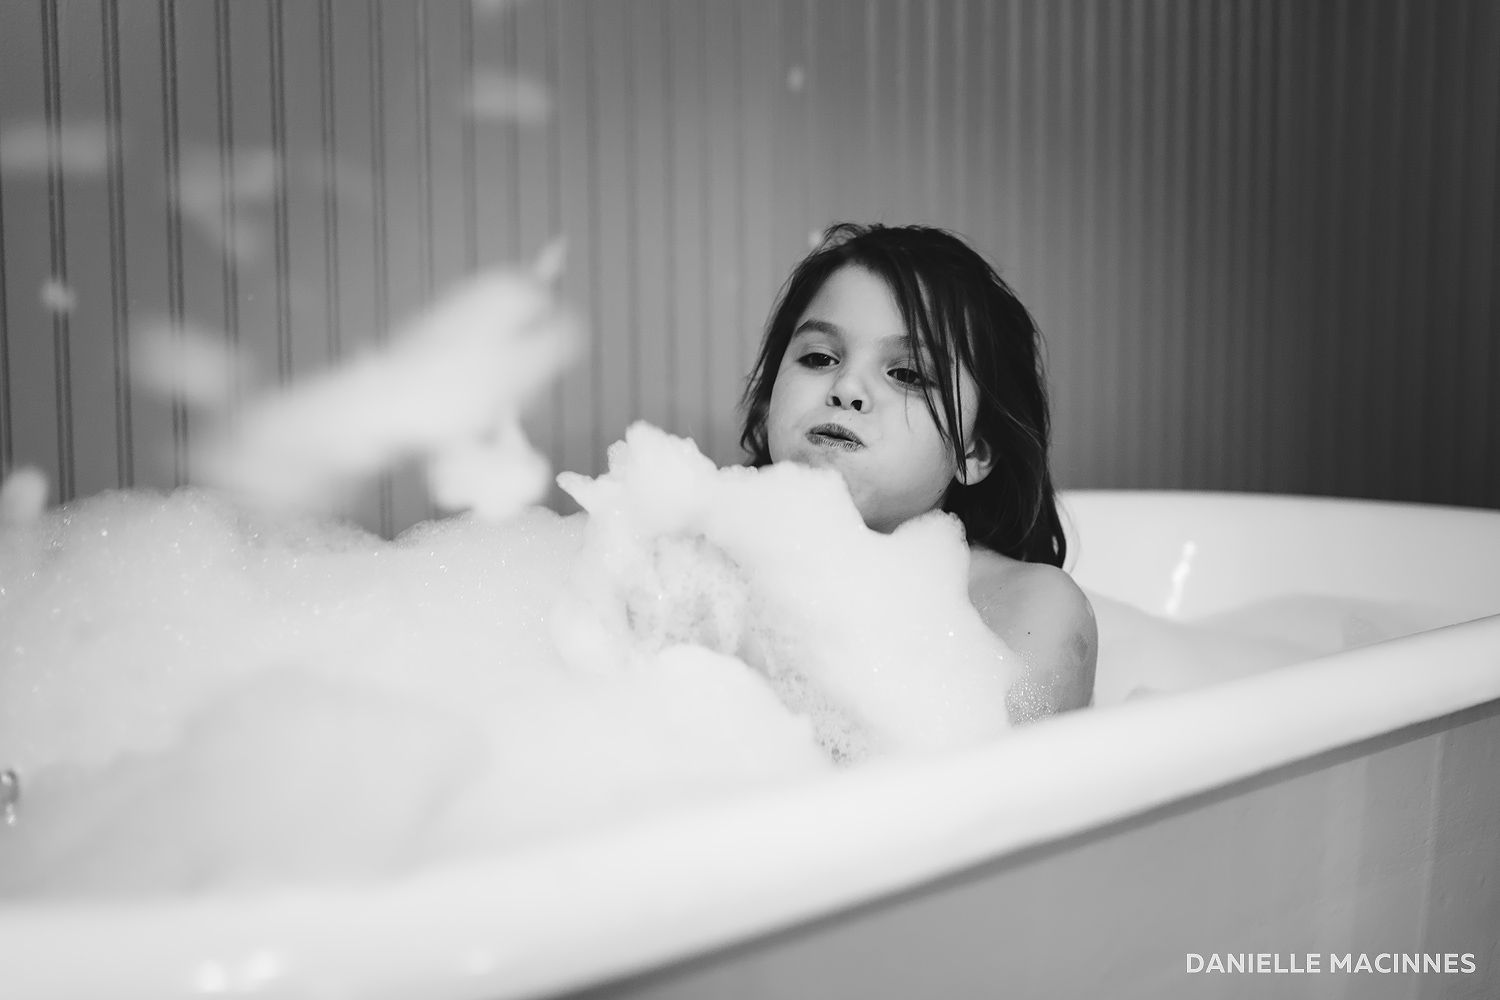 Girl blowing bubbles in bath